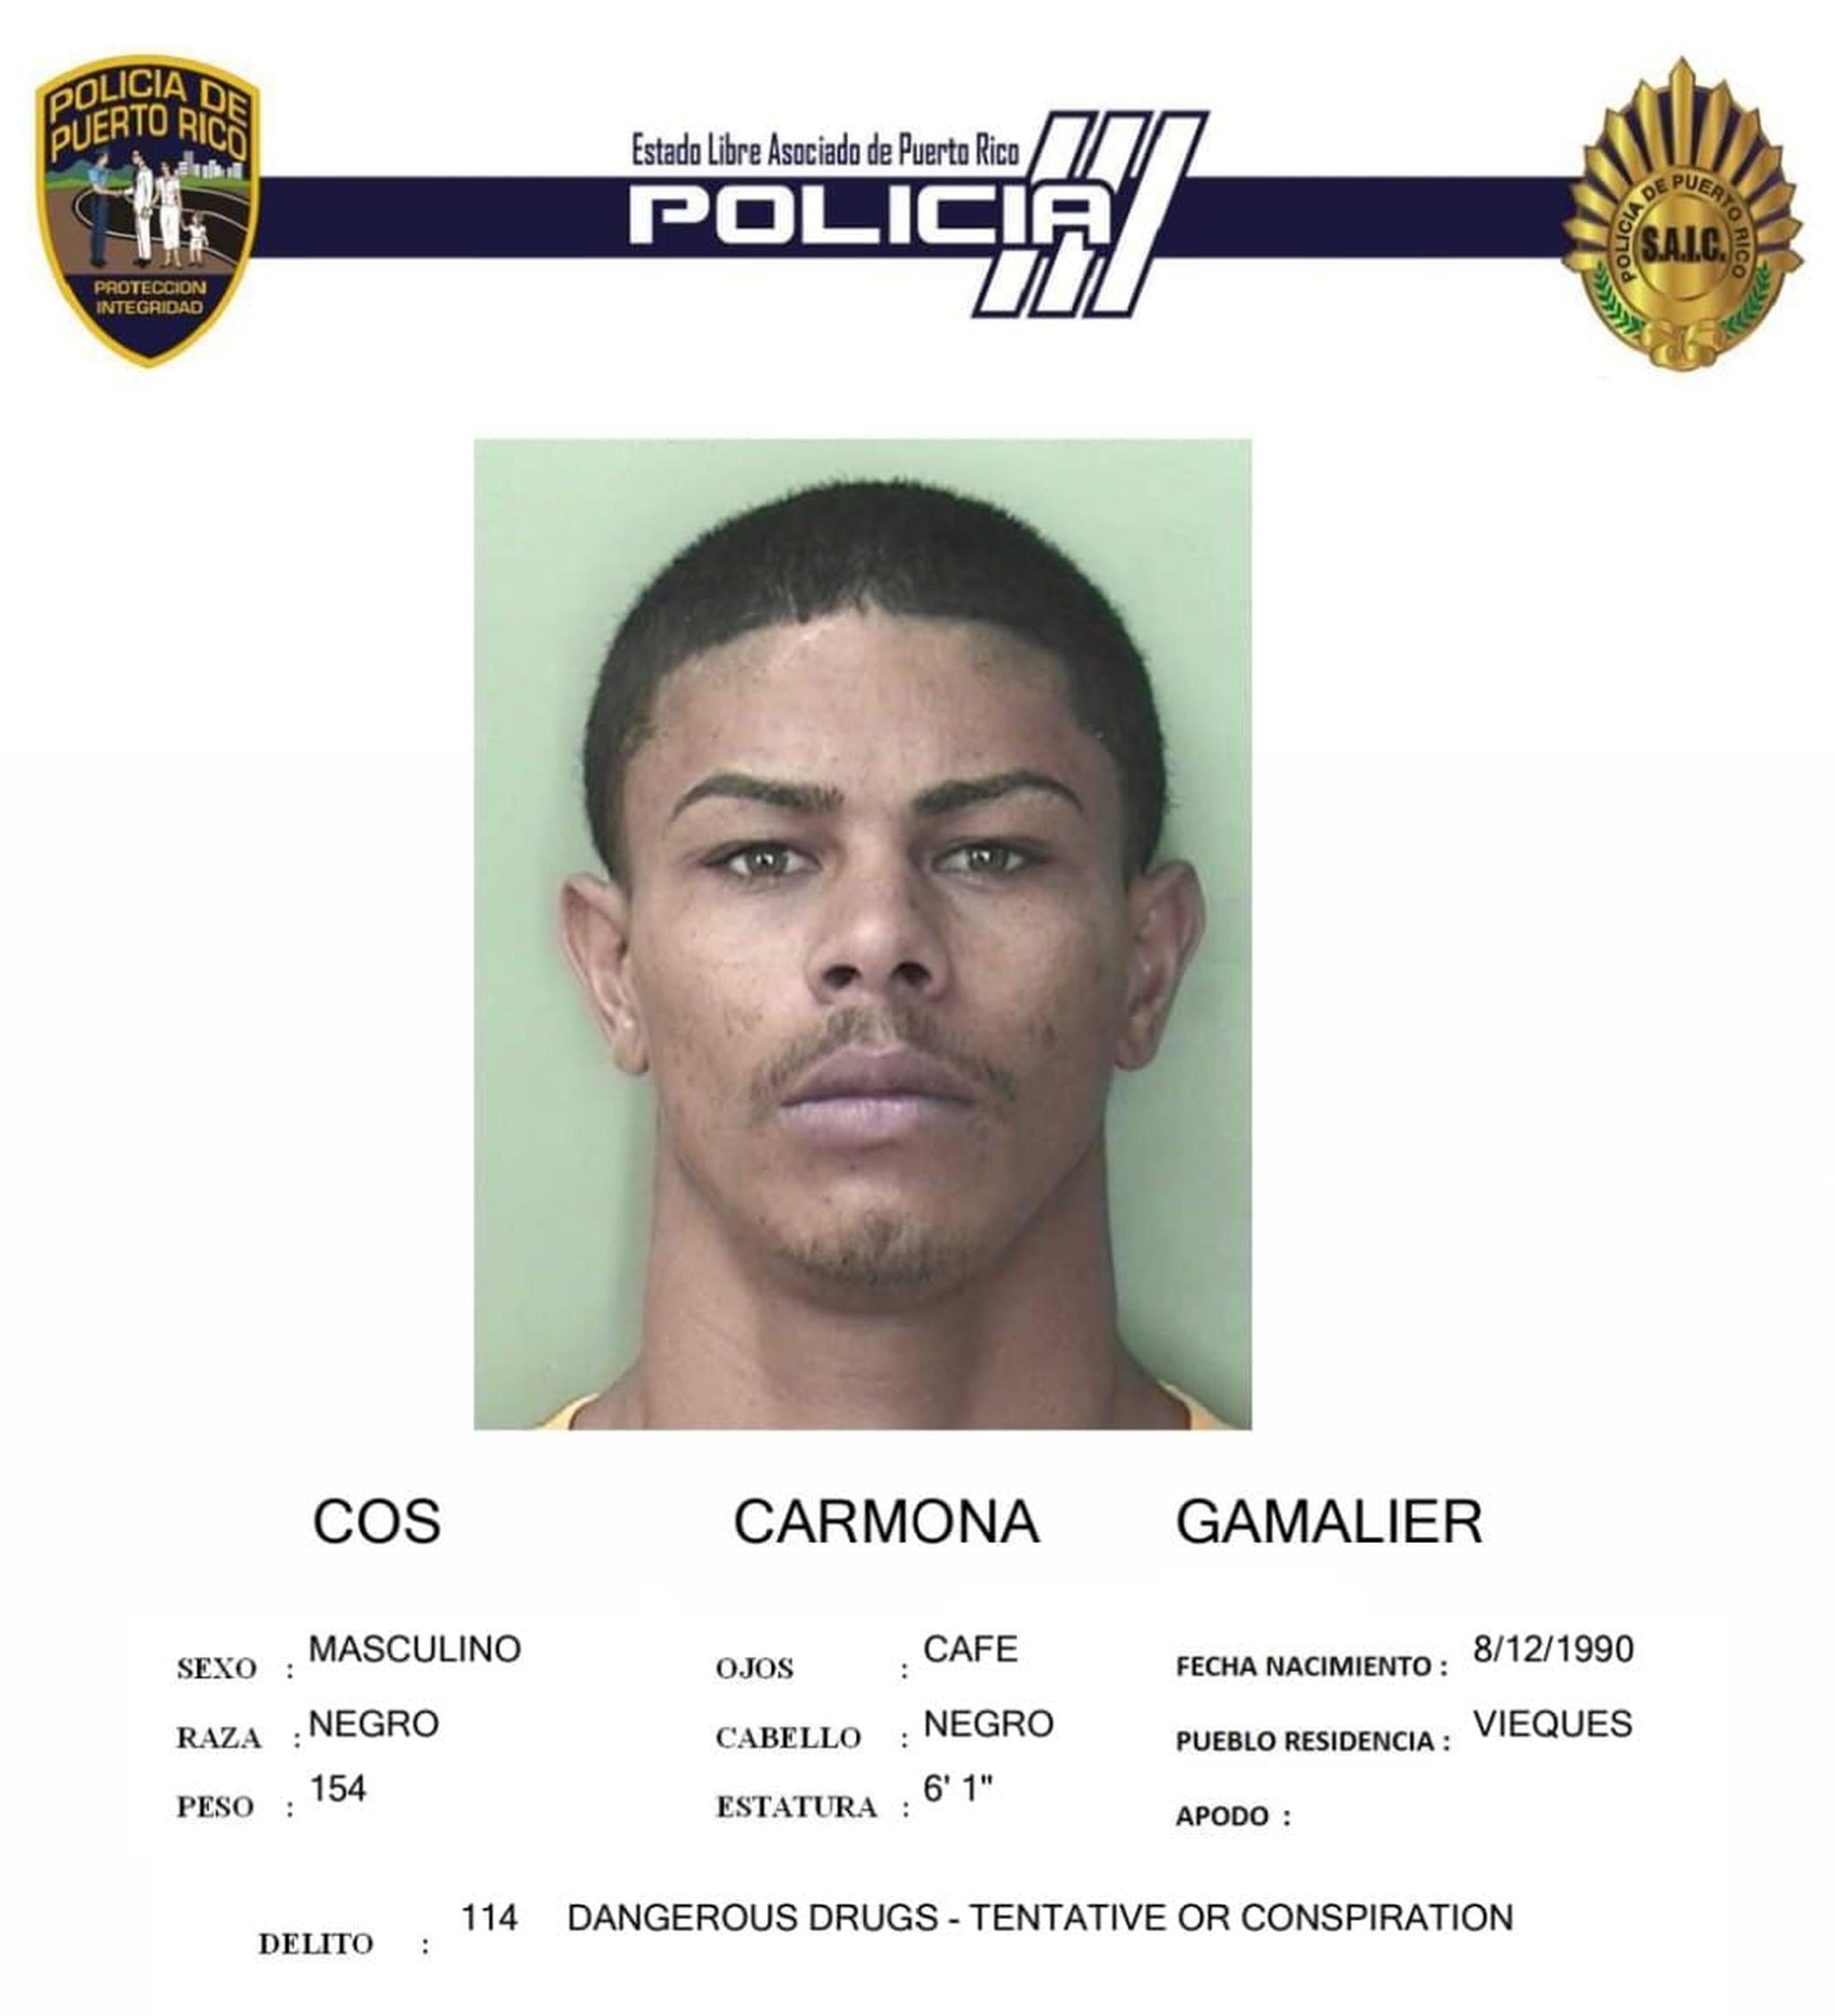 Gamalier Cos Cardona enfrenta cargos por feminicidio, asesinato y violación a la Ley de Armas.